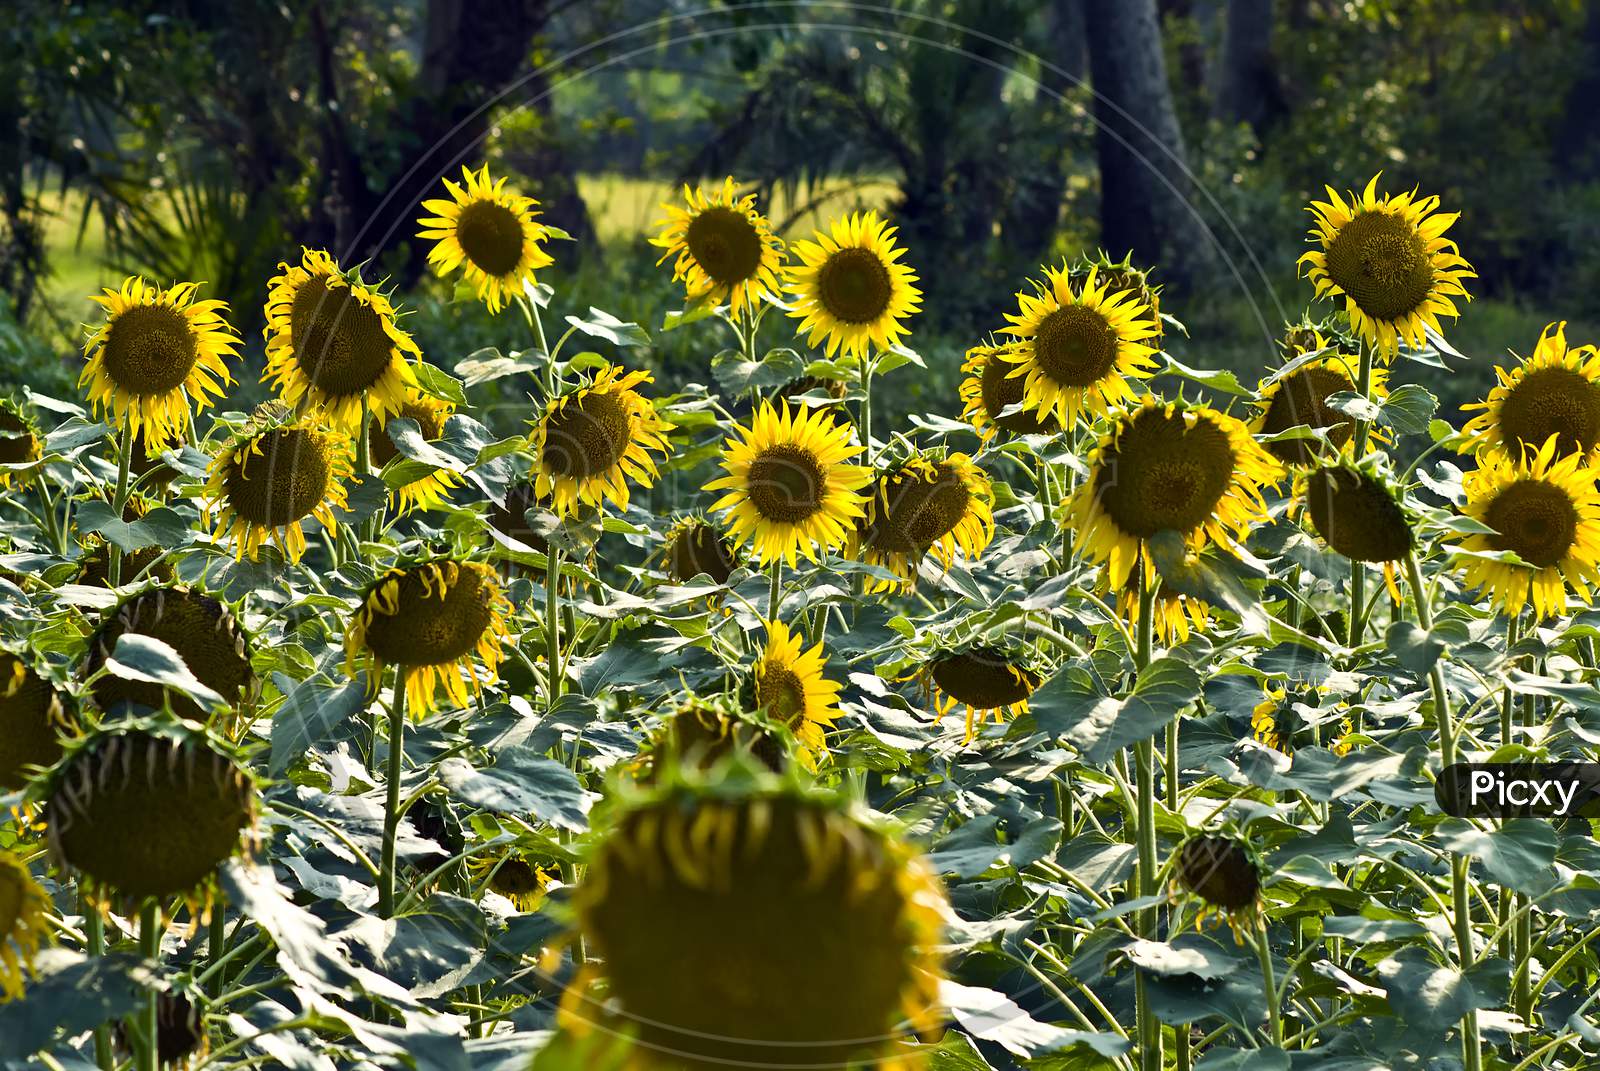 The Sunflower field.